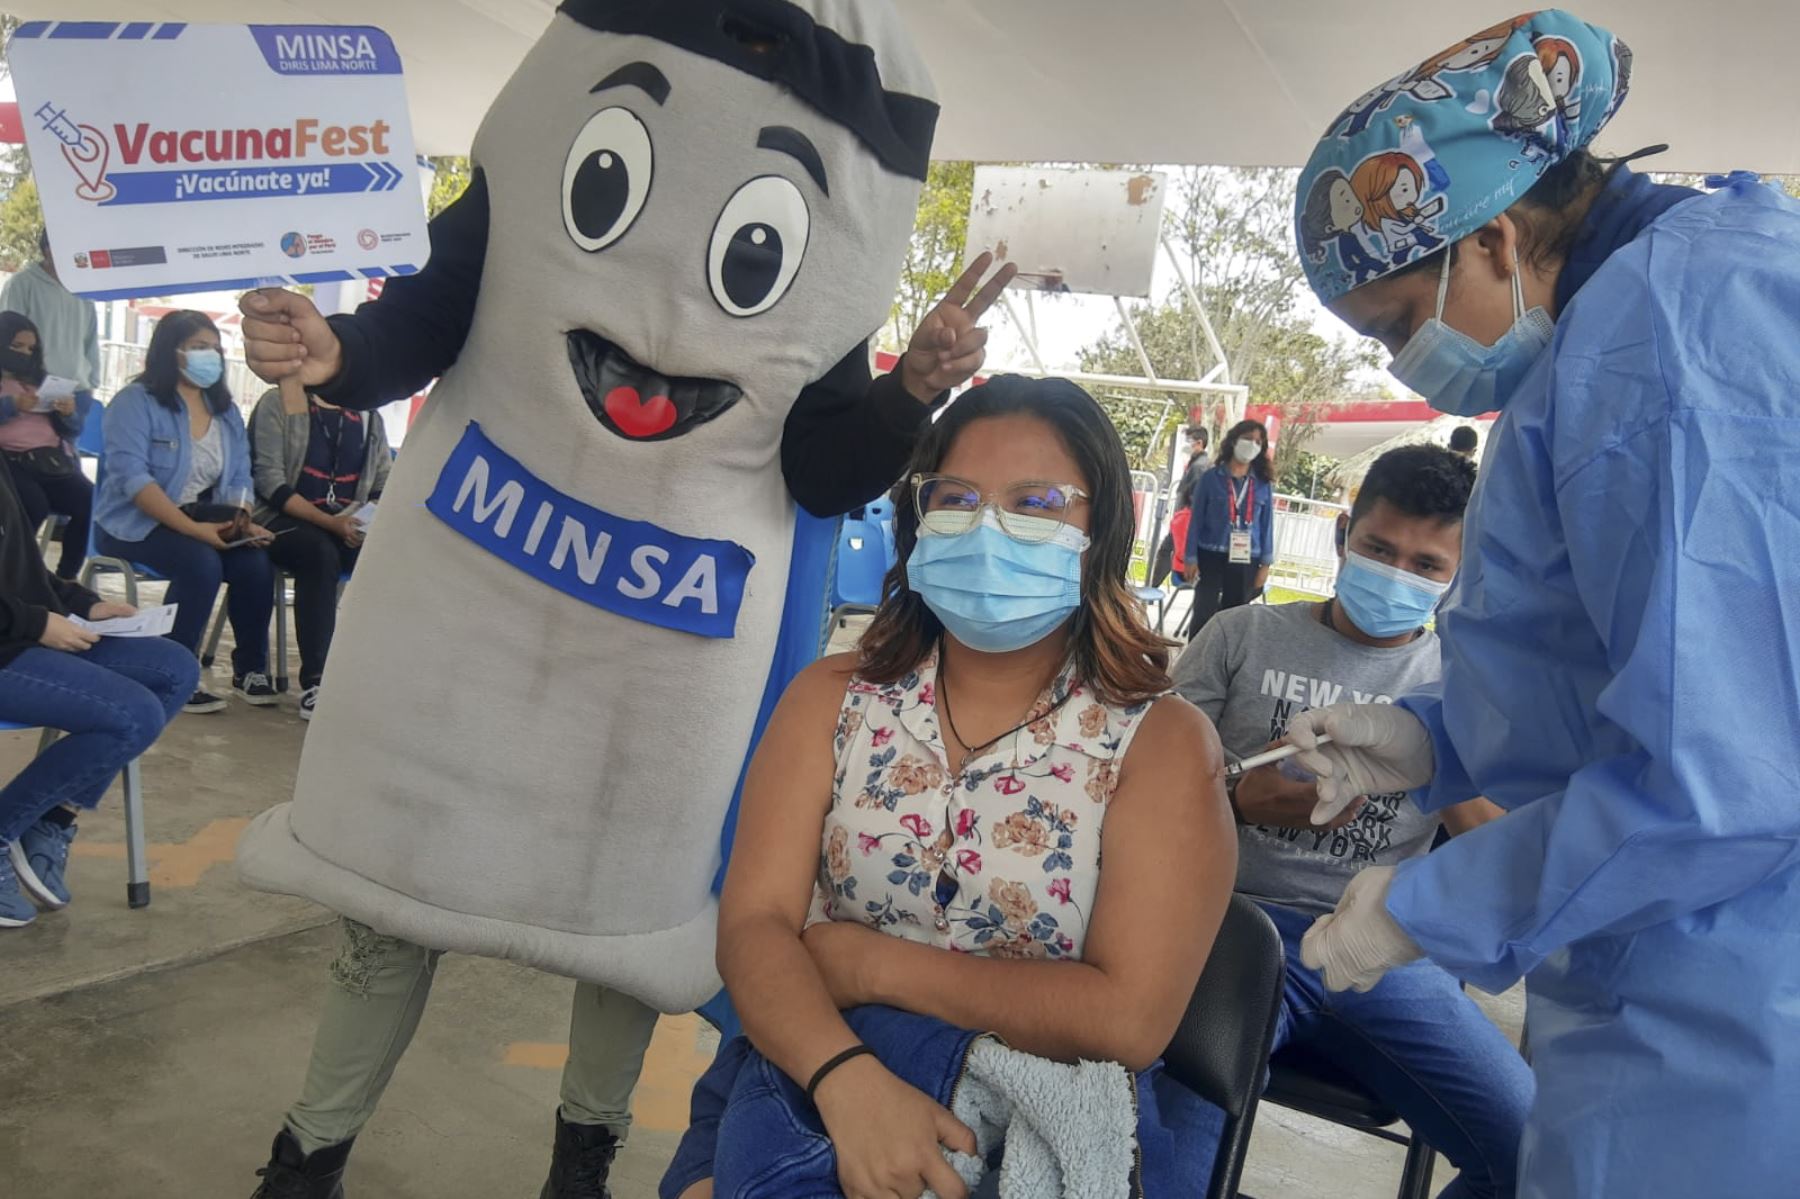 En el Parque Zonal Mayta Cápac, continúa la vacunación contra la covid-19 para jóvenes de 18 a más en los "Juegos VacunaFest". Una es ninguna ¡Ponte las dos dosis! Foto: Minsa